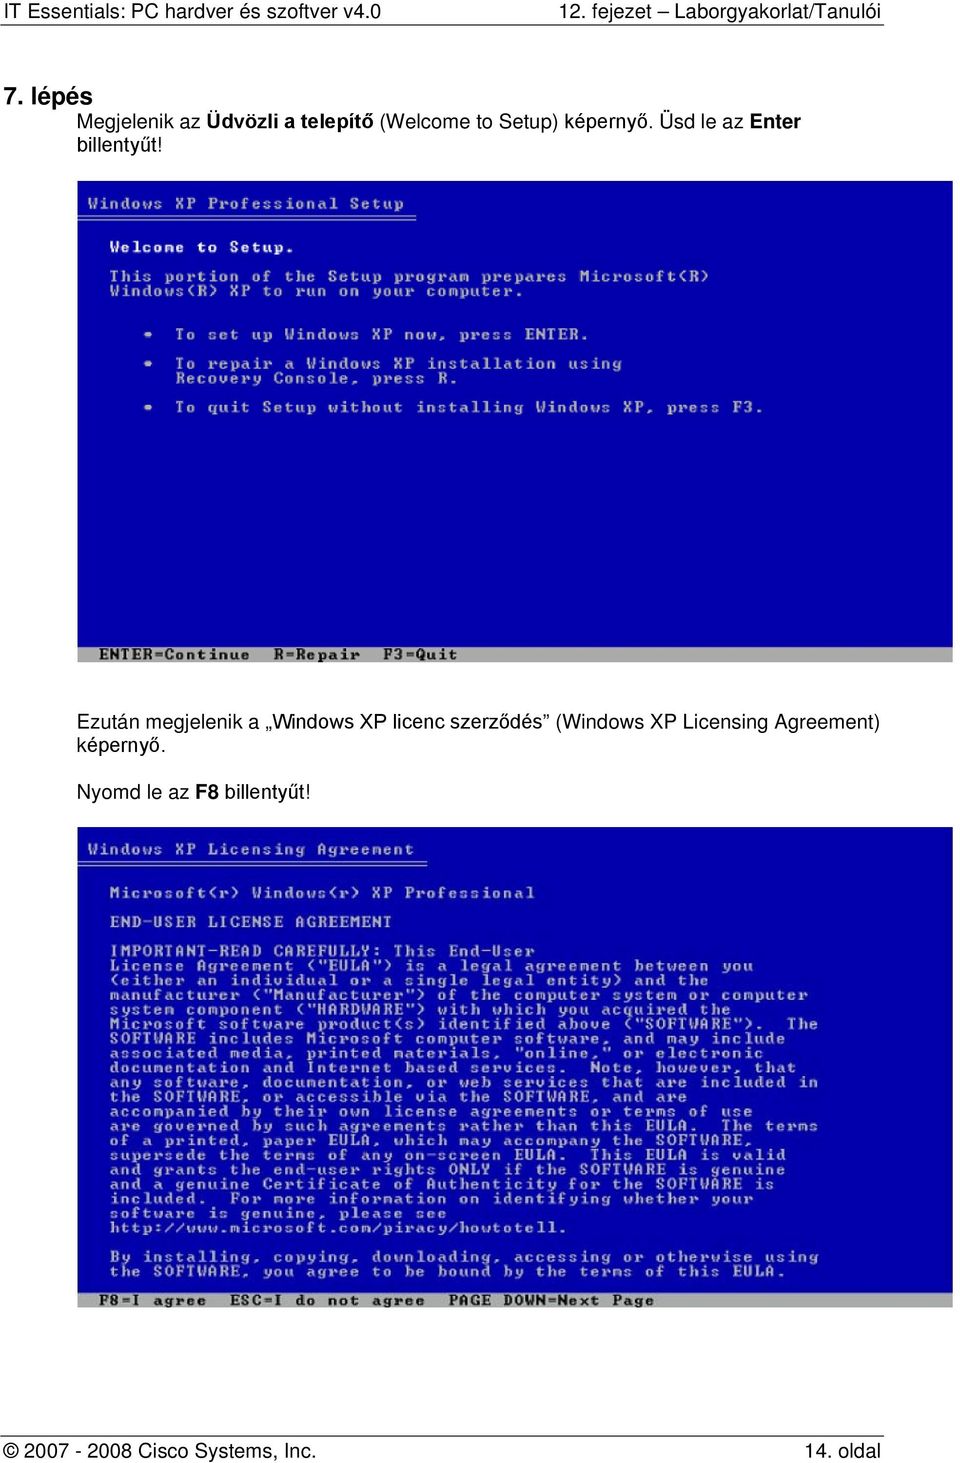 Ezután megjelenik a Windows XP licenc szerződés (Windows XP